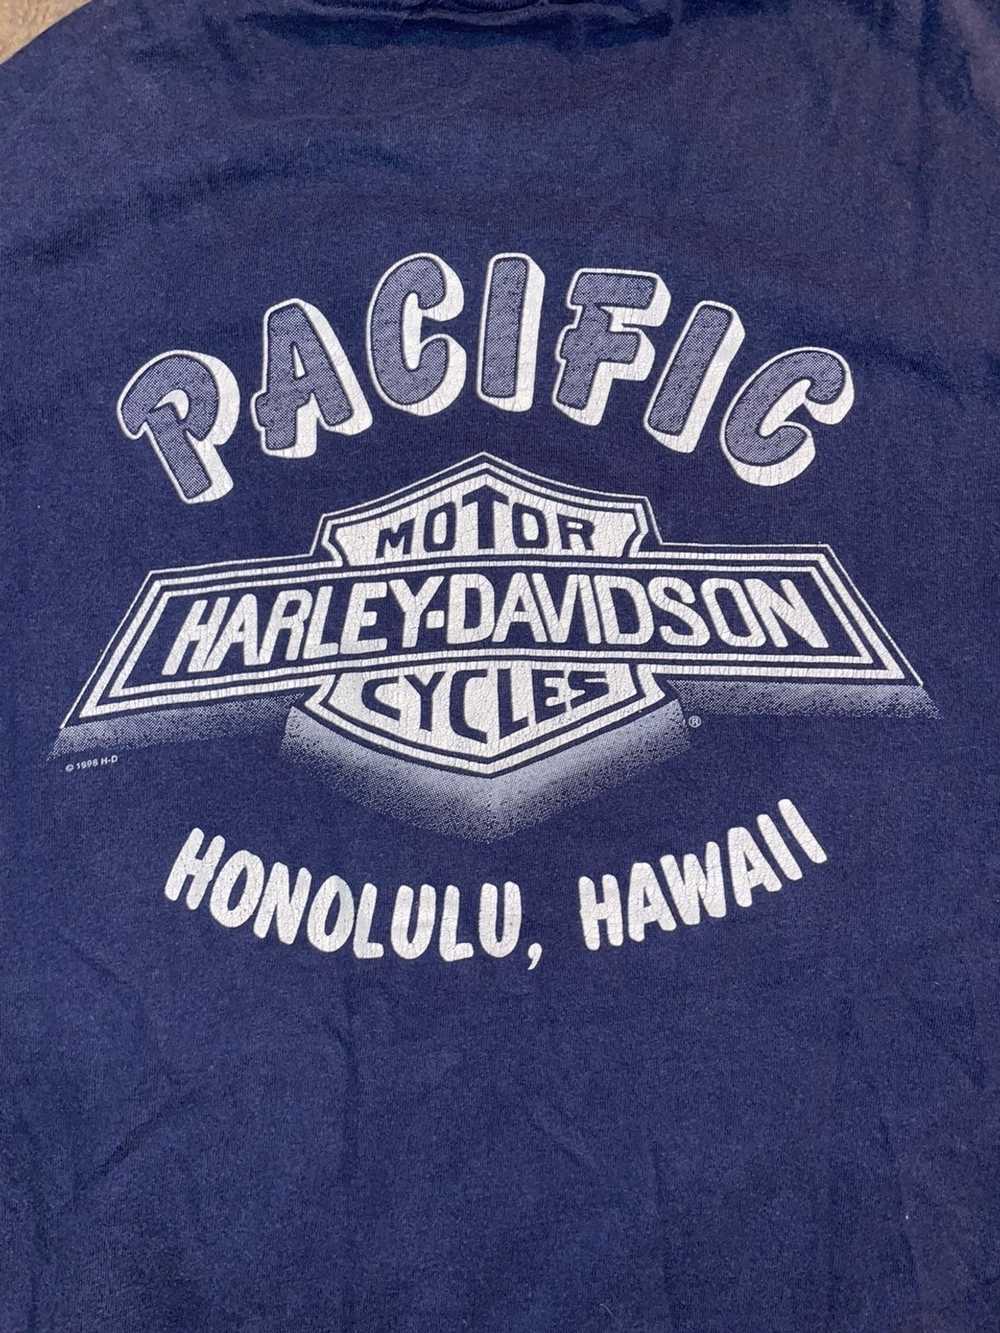 Harley Davidson Vintage Harley Davidson t shirt - image 2